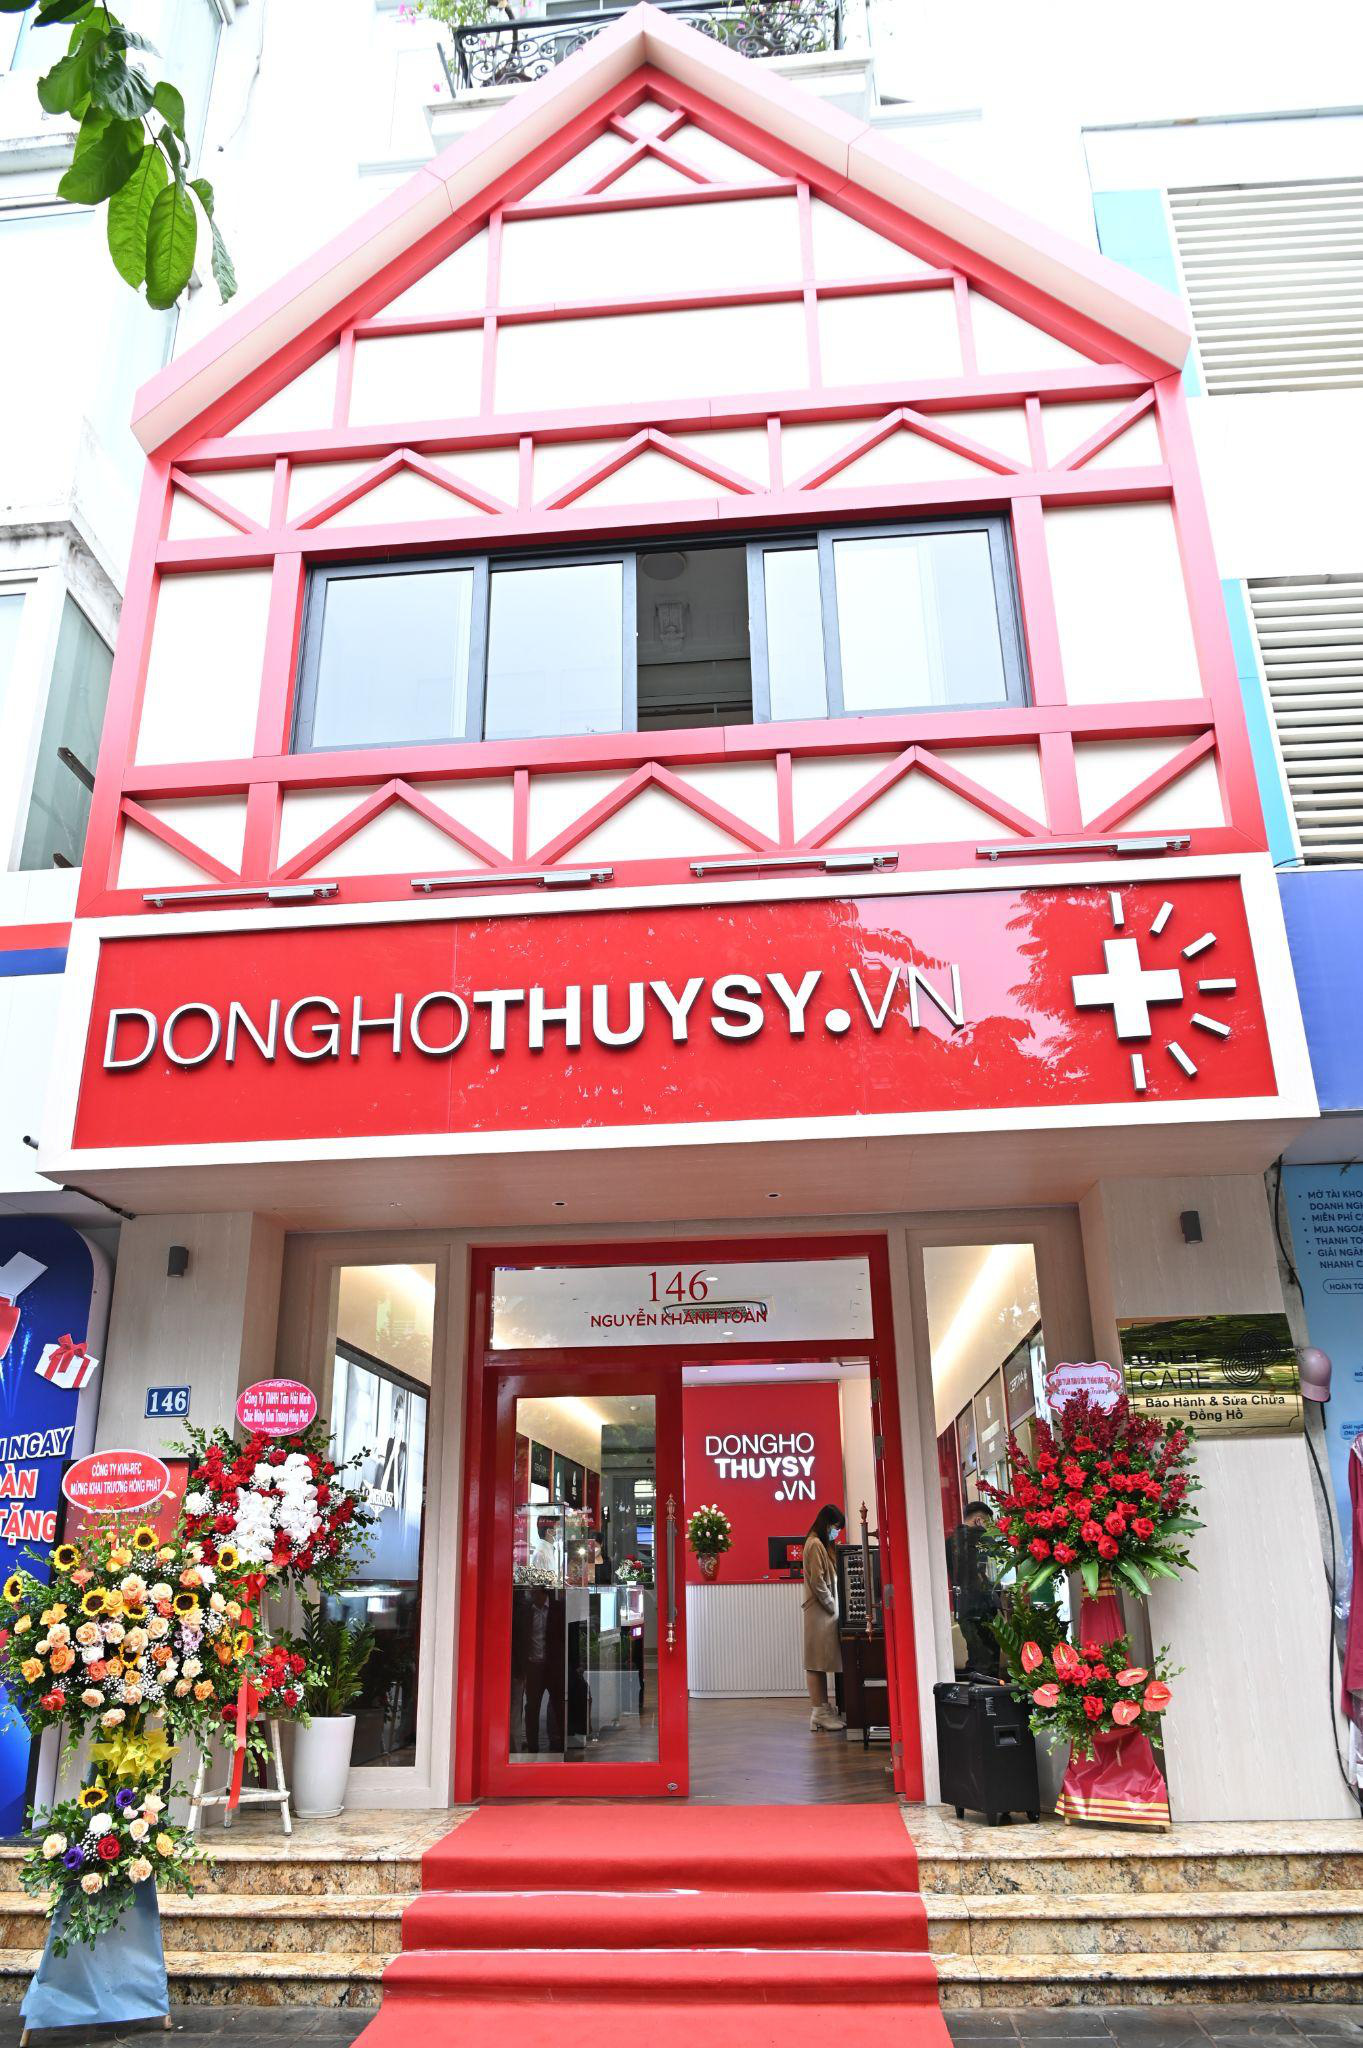 Donghothuysy.vn - Showroom đồng hồ Thụy Sỹ chuyên biệt tại quận Cầu Giấy - Ảnh 1.